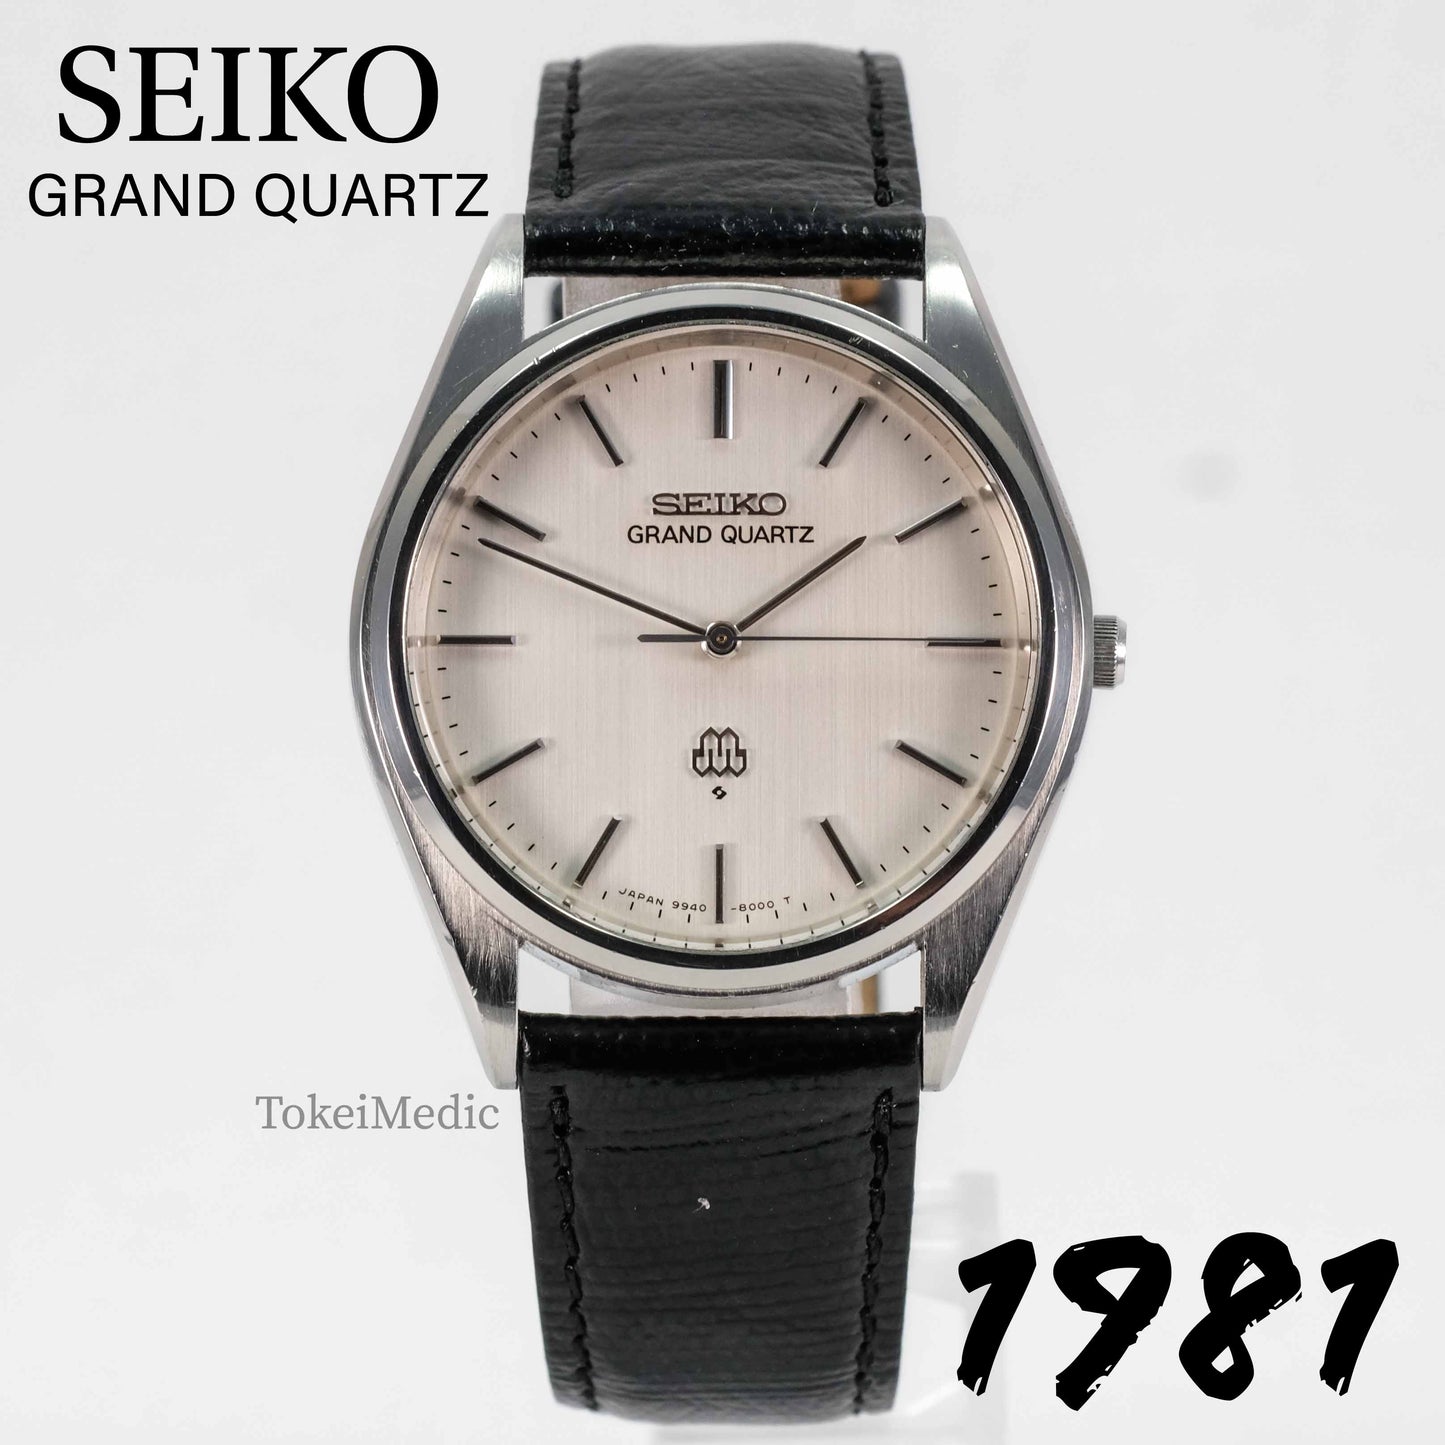 1981 Seiko Grand Quartz 9940-8000